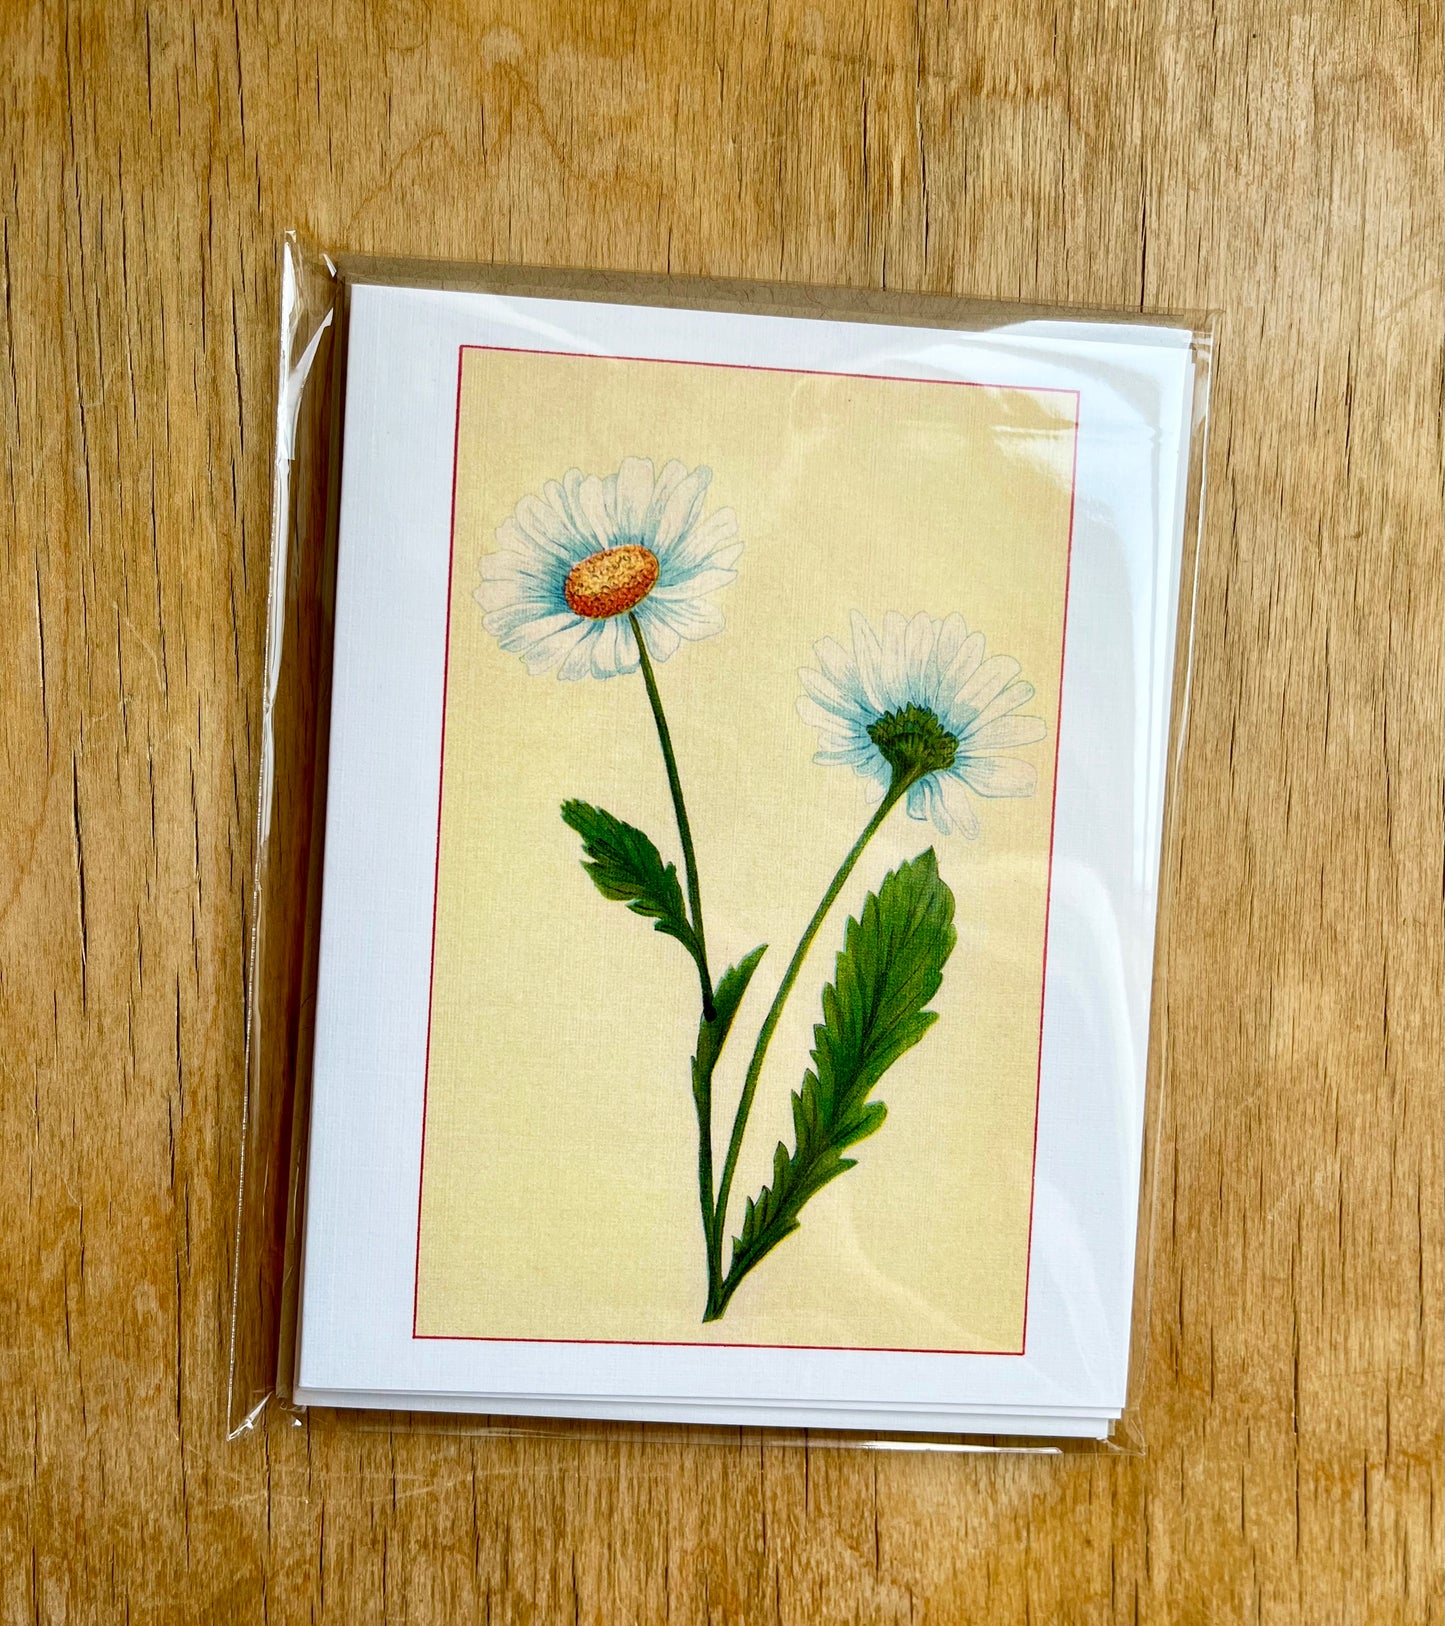 Wild flowers of America - greeting card 4 pack (white varieties)